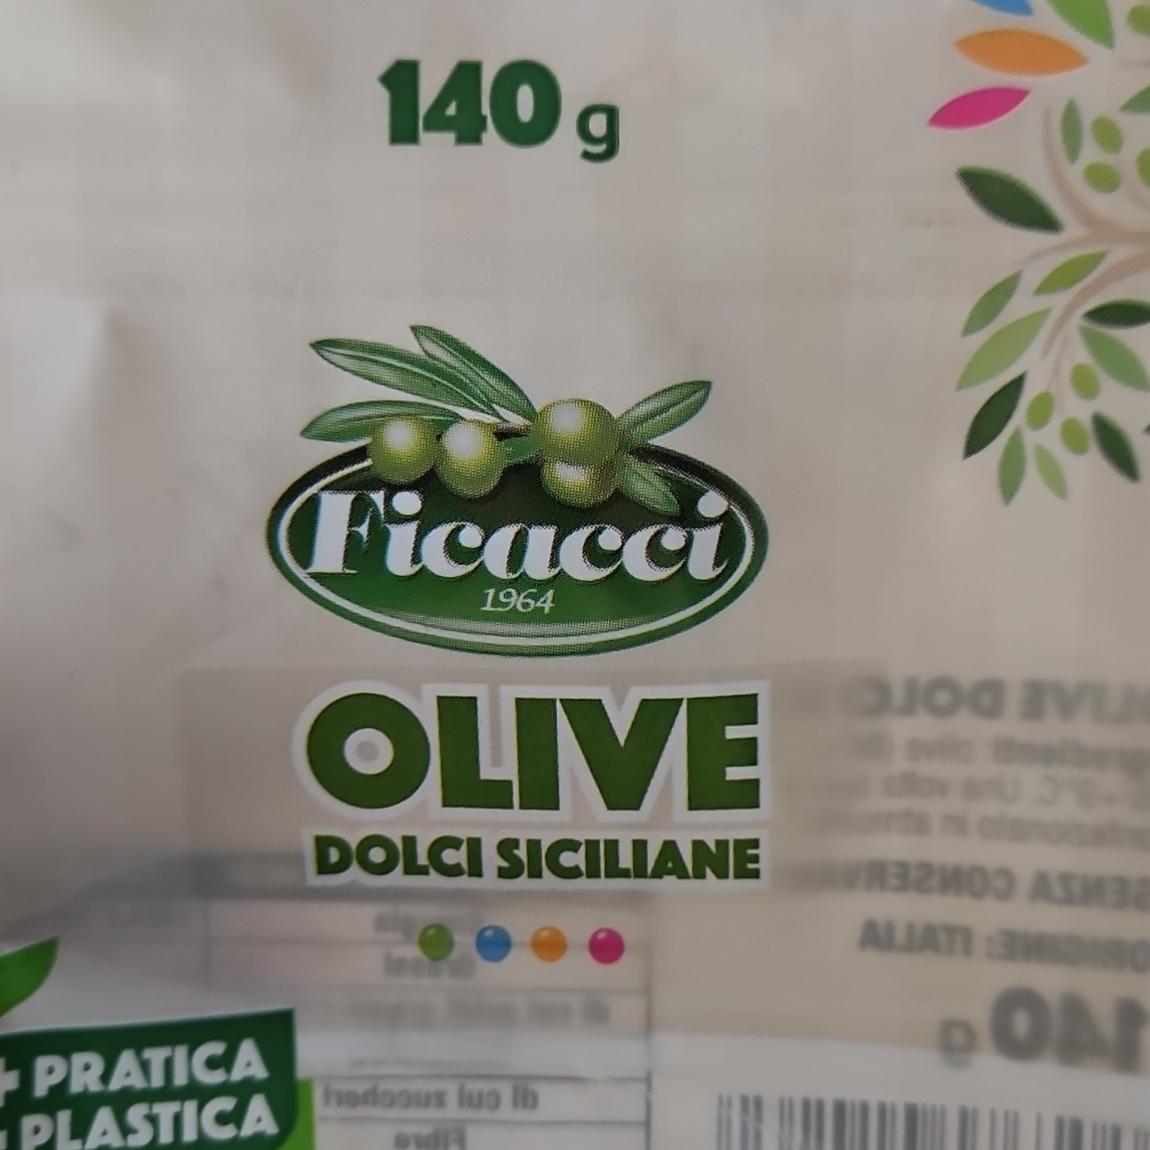 Fotografie - Olive dolci siciliane Ficacci